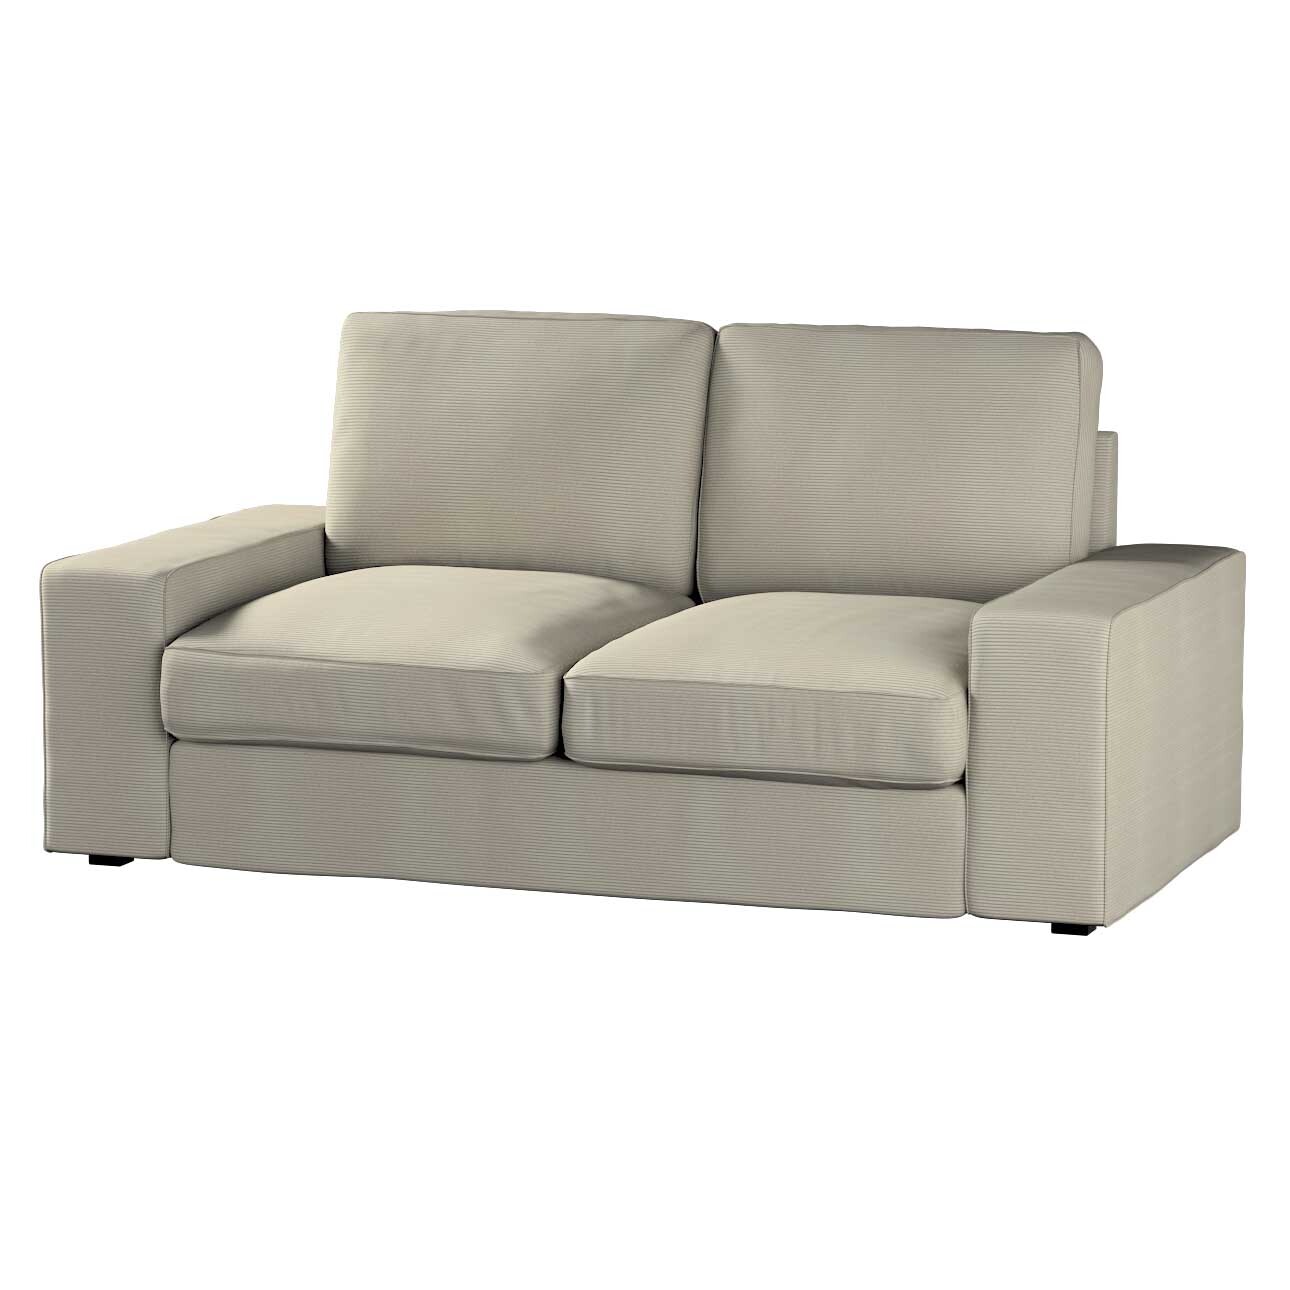 Bezug für Kivik 2-Sitzer Sofa, grau, Bezug für Sofa Kivik 2-Sitzer, Manches günstig online kaufen